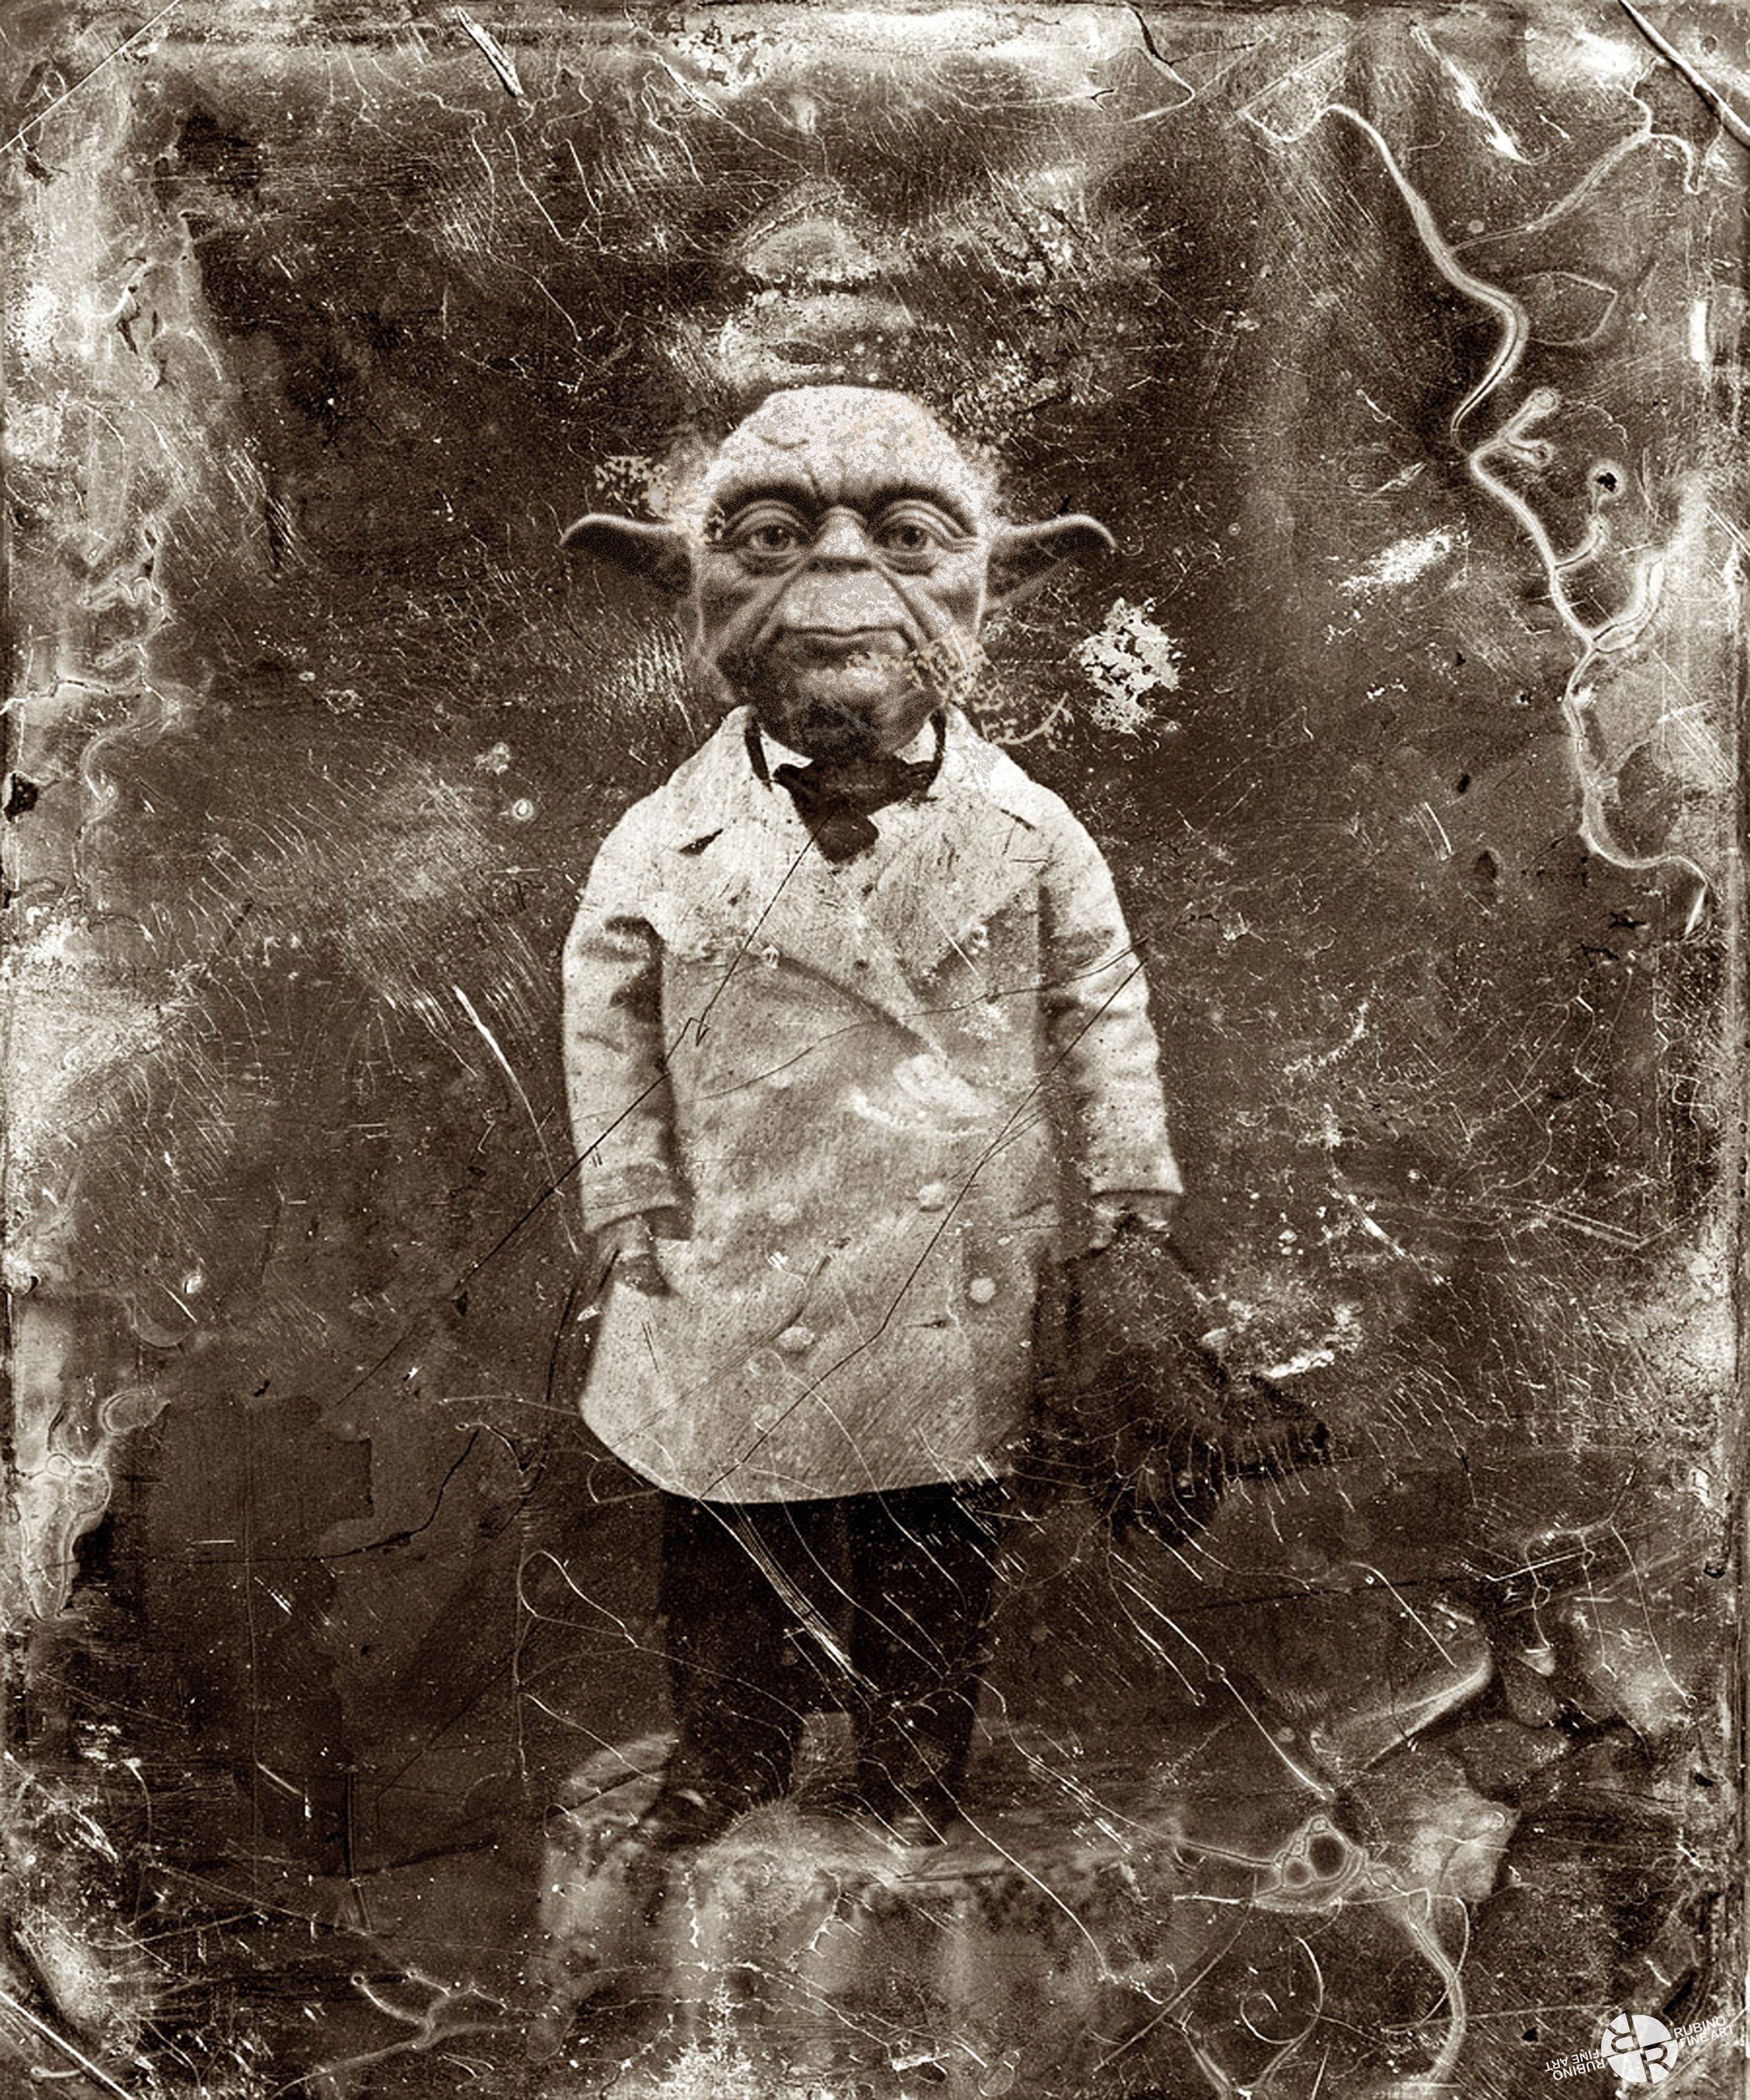 Yoda Star Wars Antique Photo, Mixed Media on Canvas - Mixed Media Art by Tony Rubino